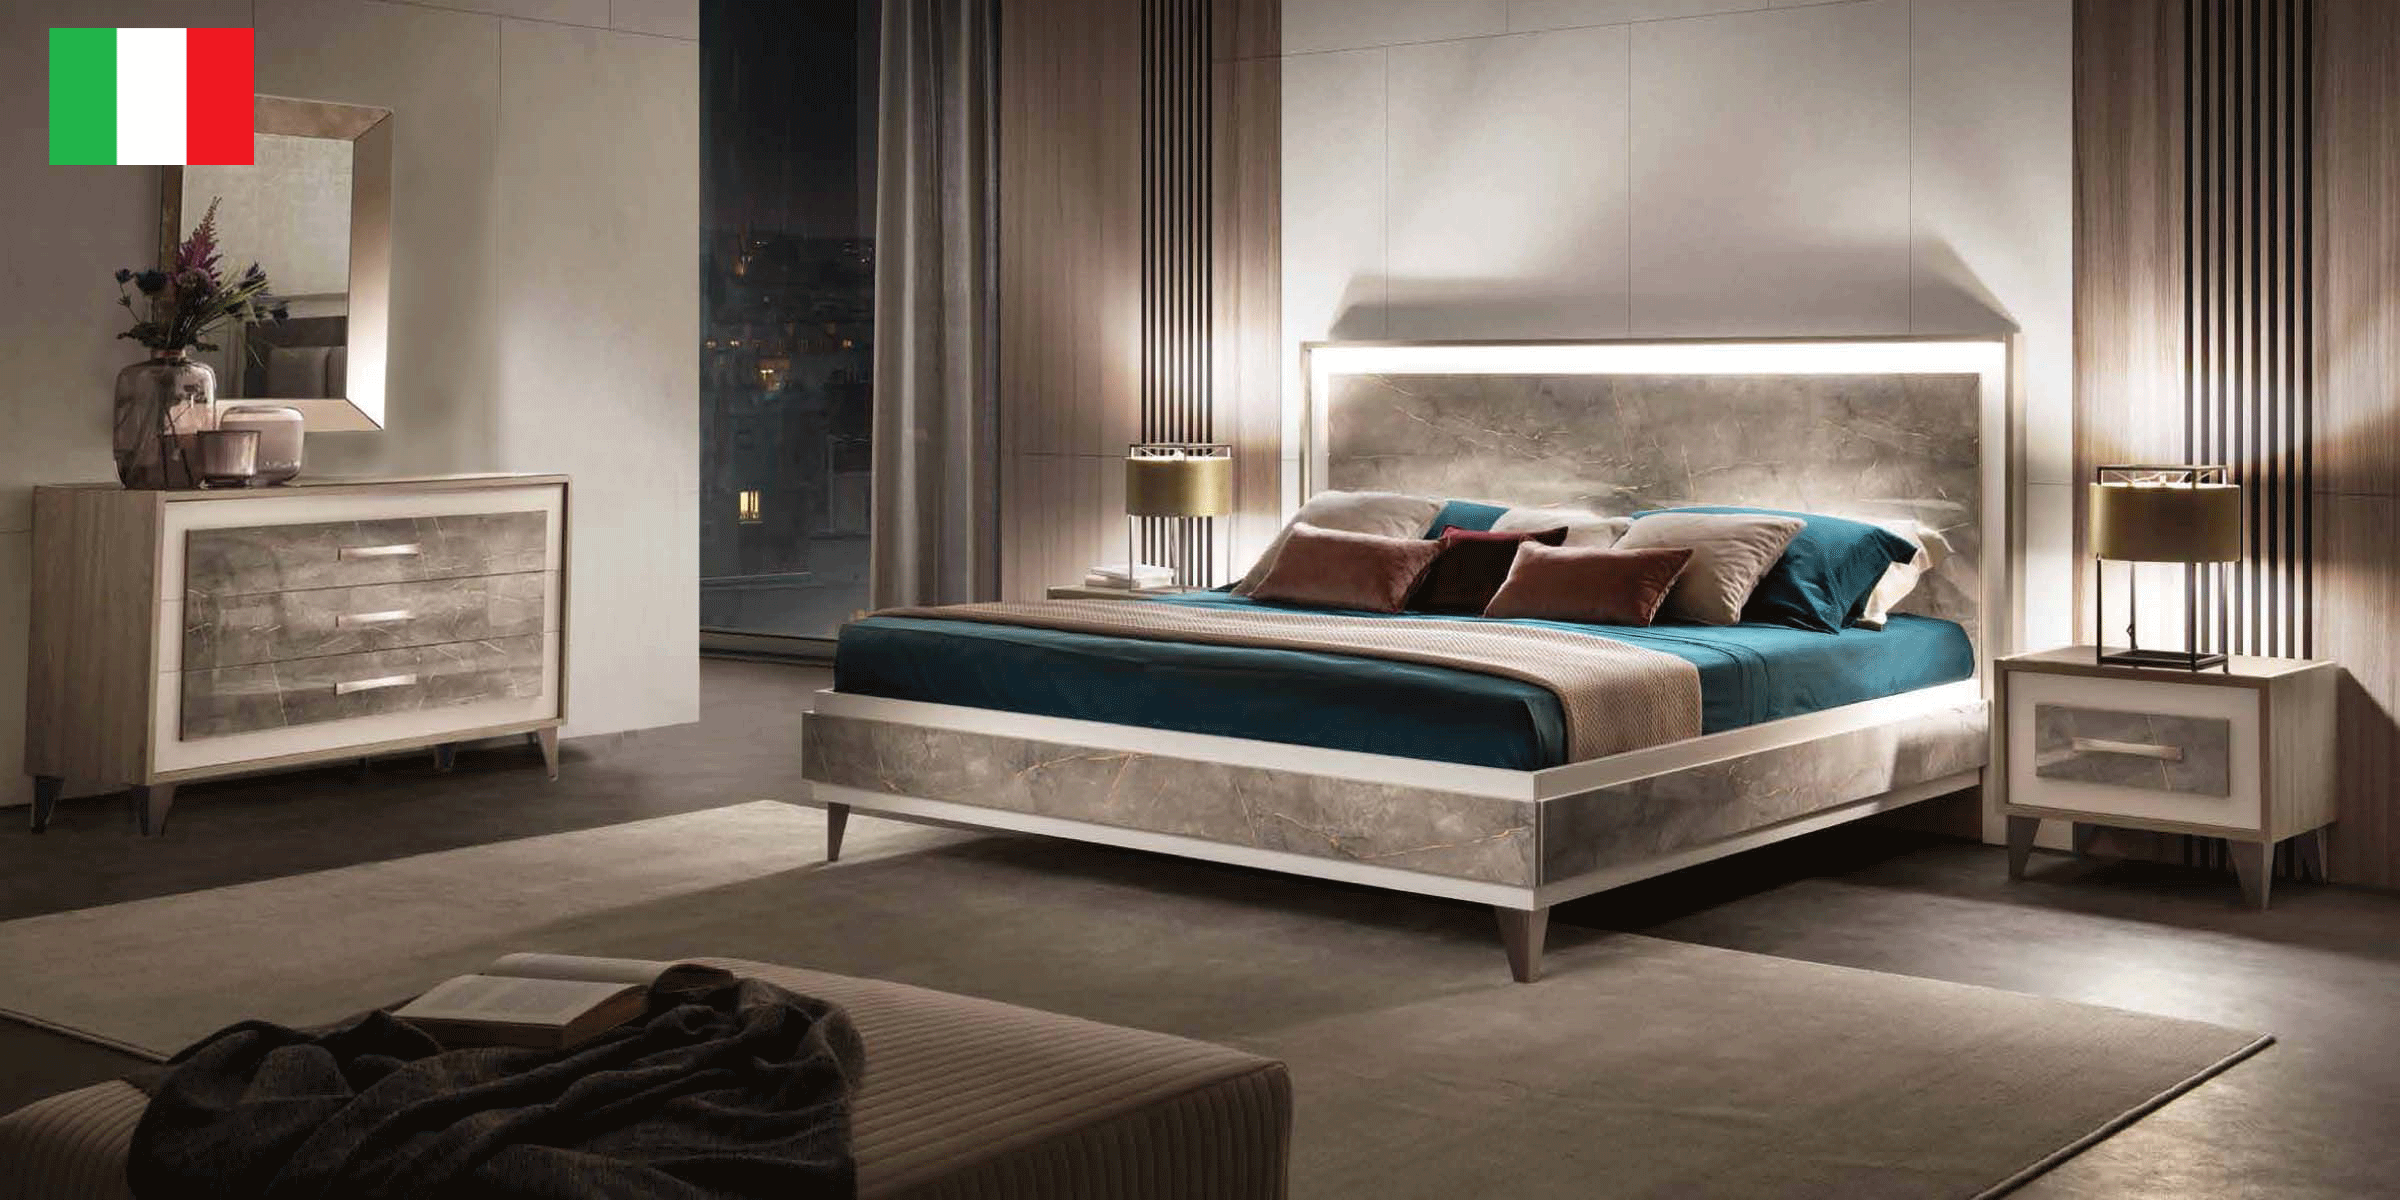 Bedroom Furniture Nightstands ArredoAmbra Bedroom by Arredoclassic with single dresser